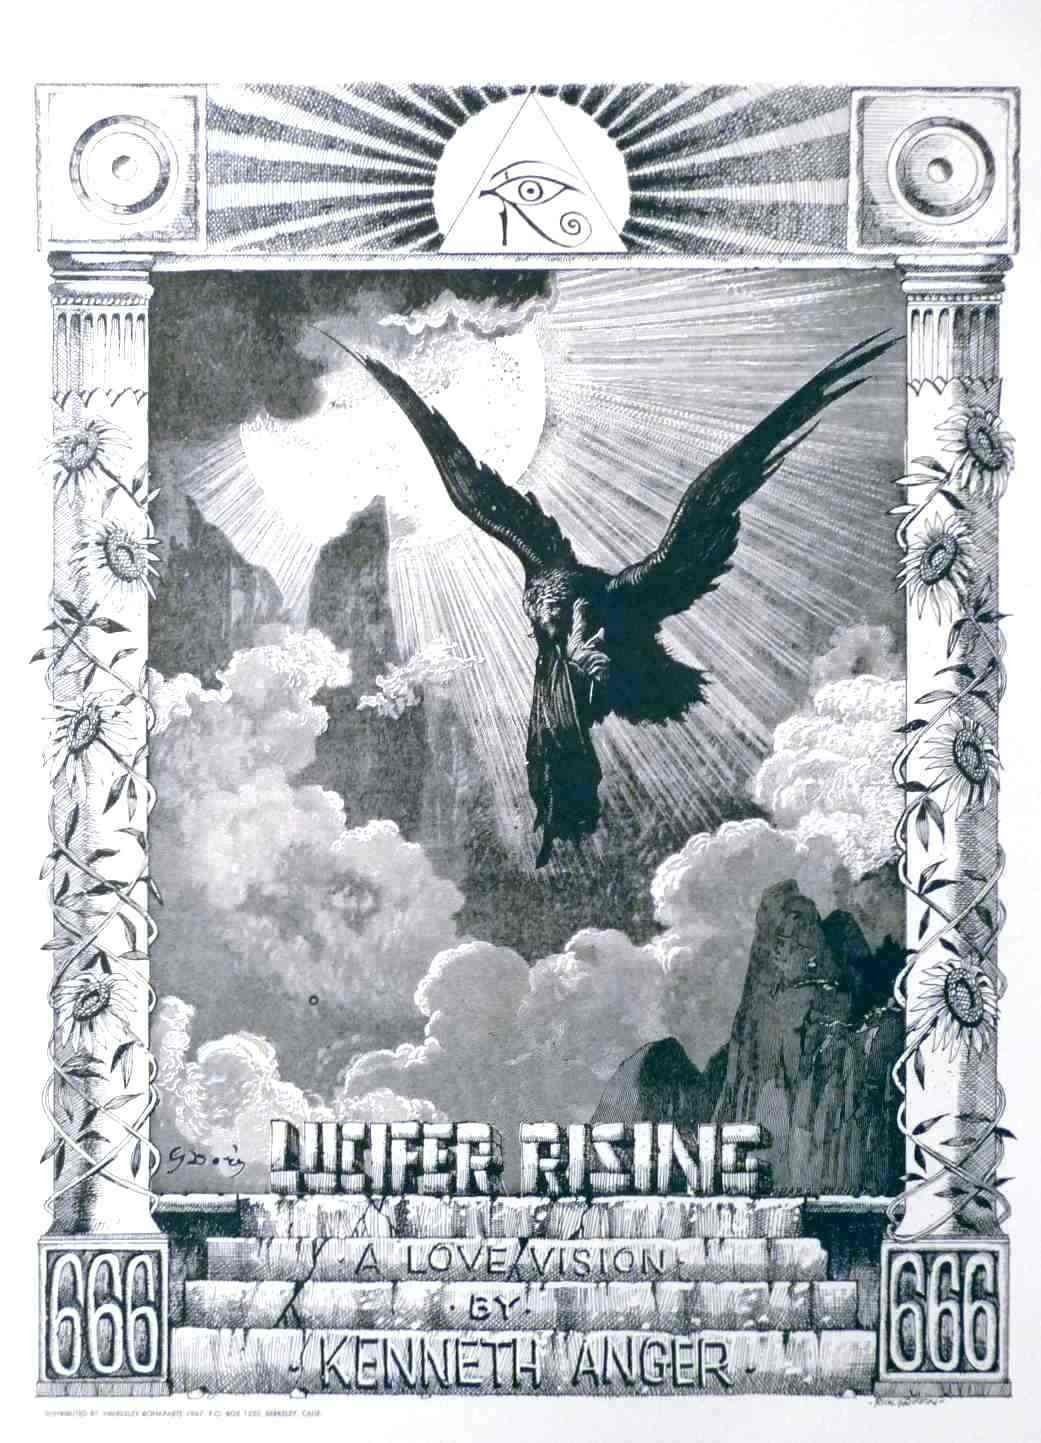 Lucifer Rising (1972) starring Kenneth Anger on DVD on DVD